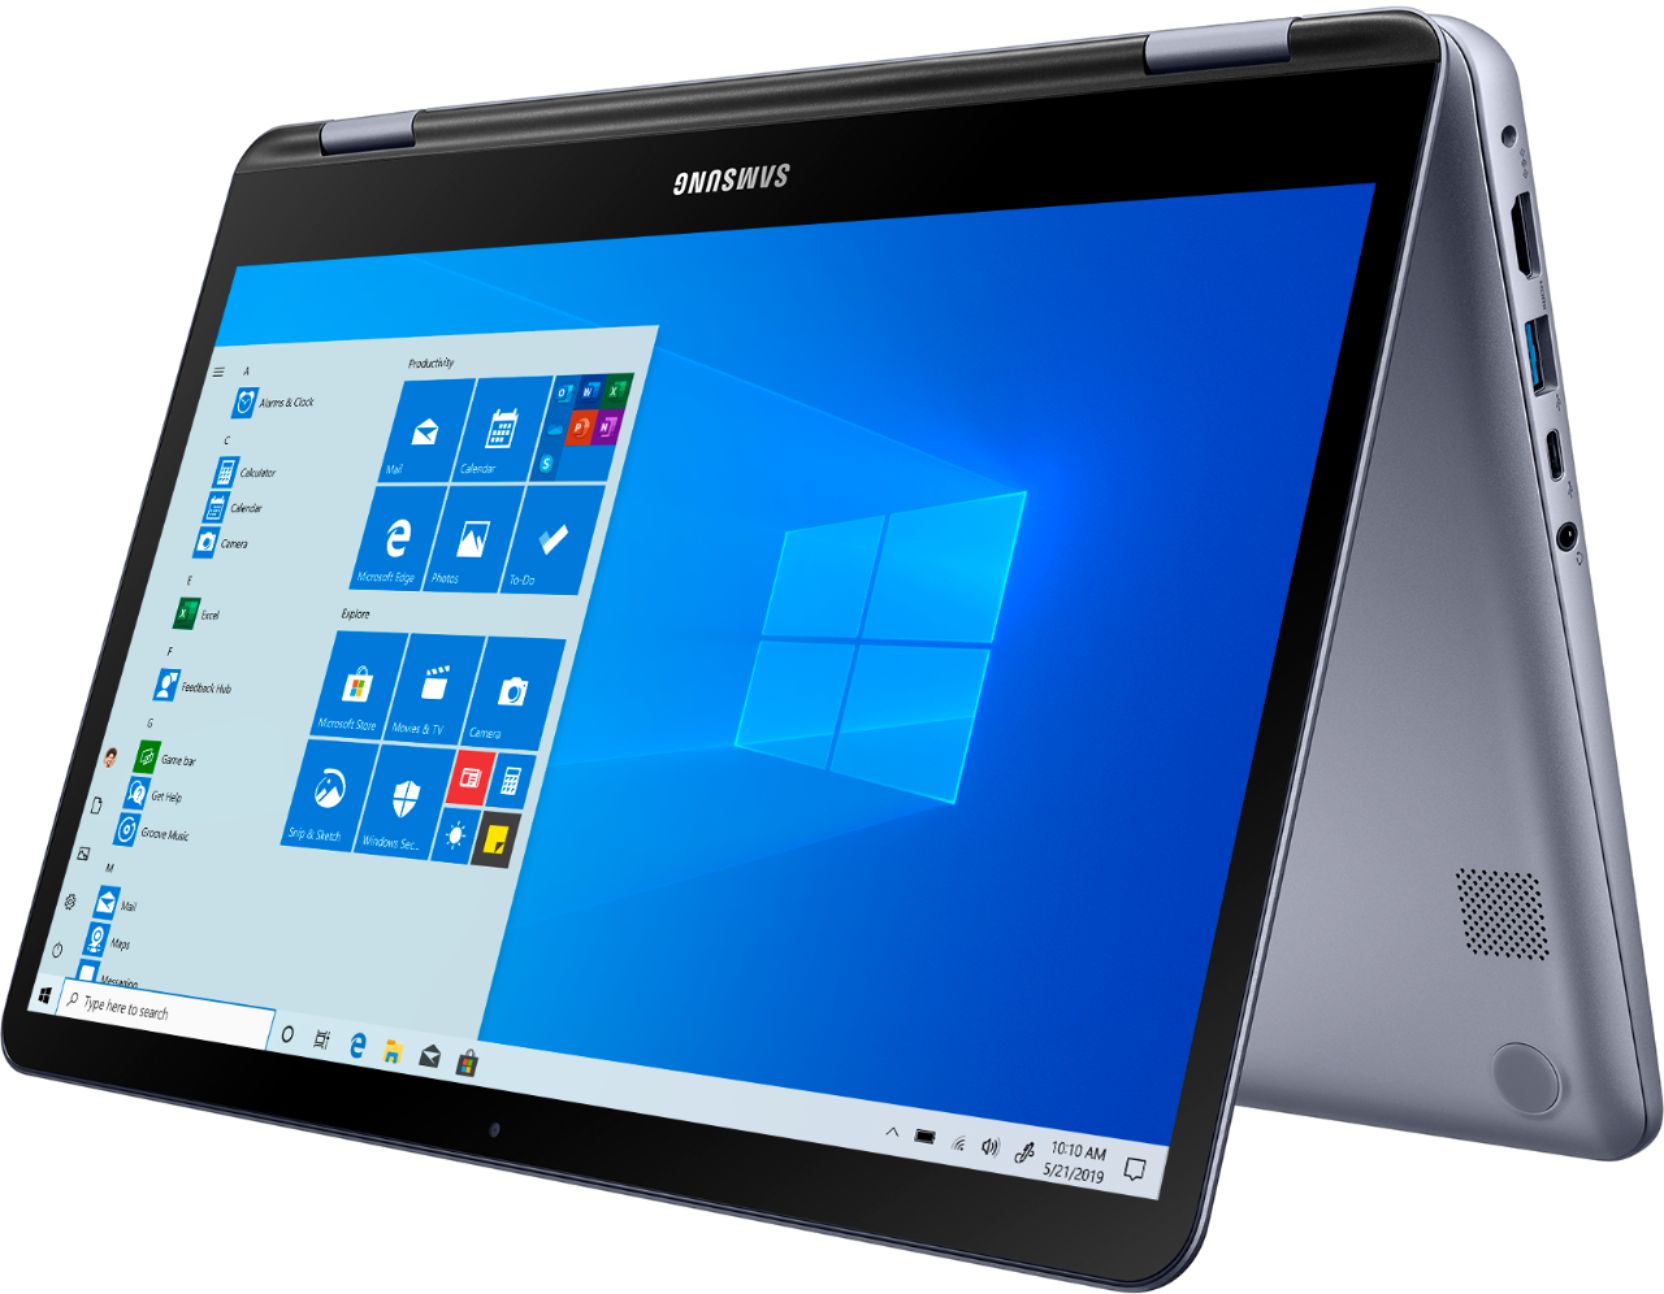 Samsung NP300E7A-S07, 17.3″ mat à 649€ : i5, 6 Go, GT 520MX Optimus (Màj  610€) – LaptopSpirit